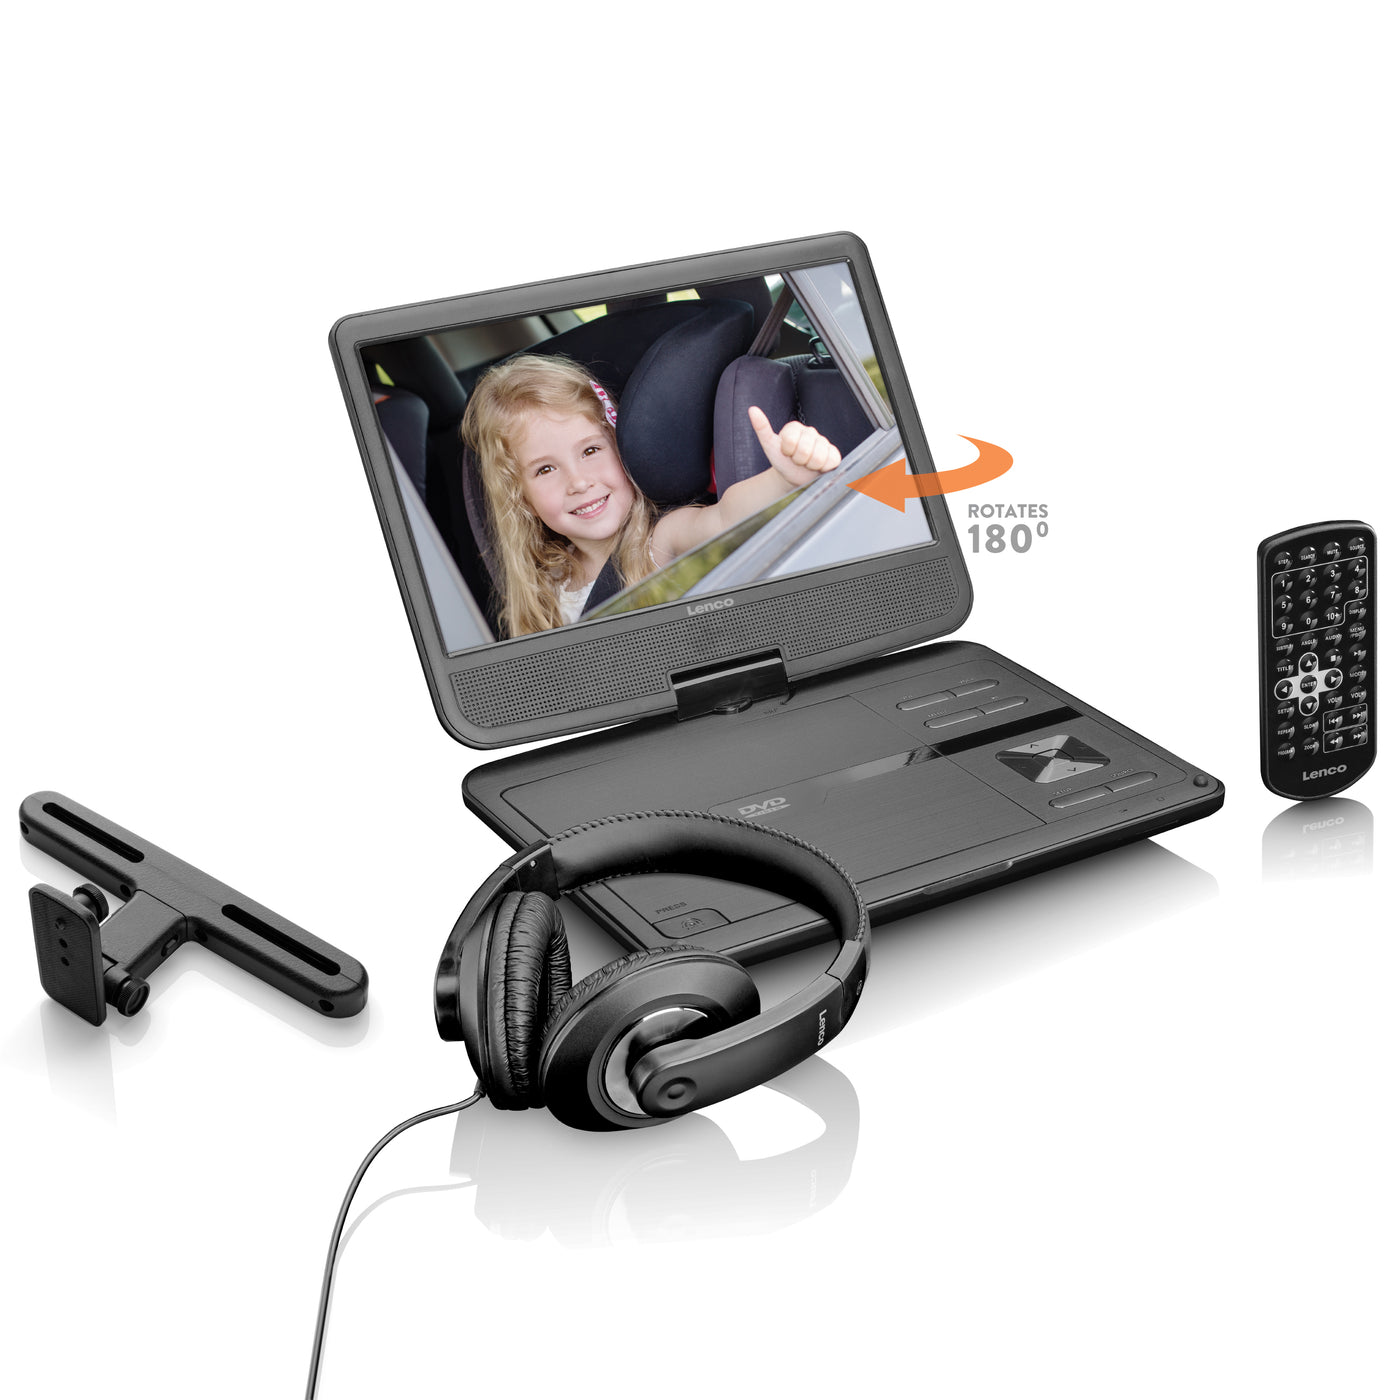 LENCO DVP-1010BK - Portable 10" DVD-speler met USB-hoofdtelefoon-ophangbeugel